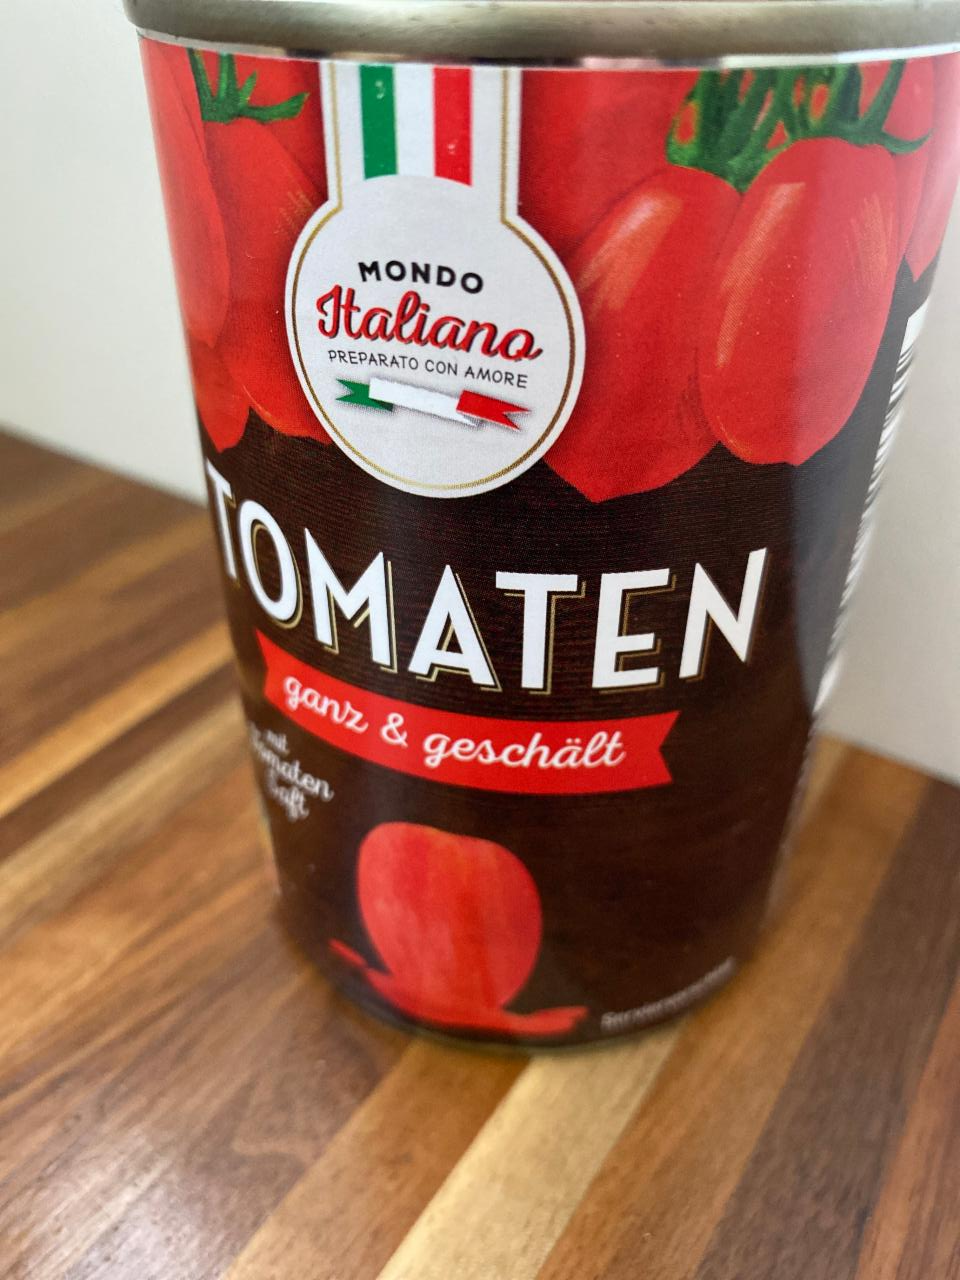 Fotografie - Tomaten ganz & geschält Mondo Italiano